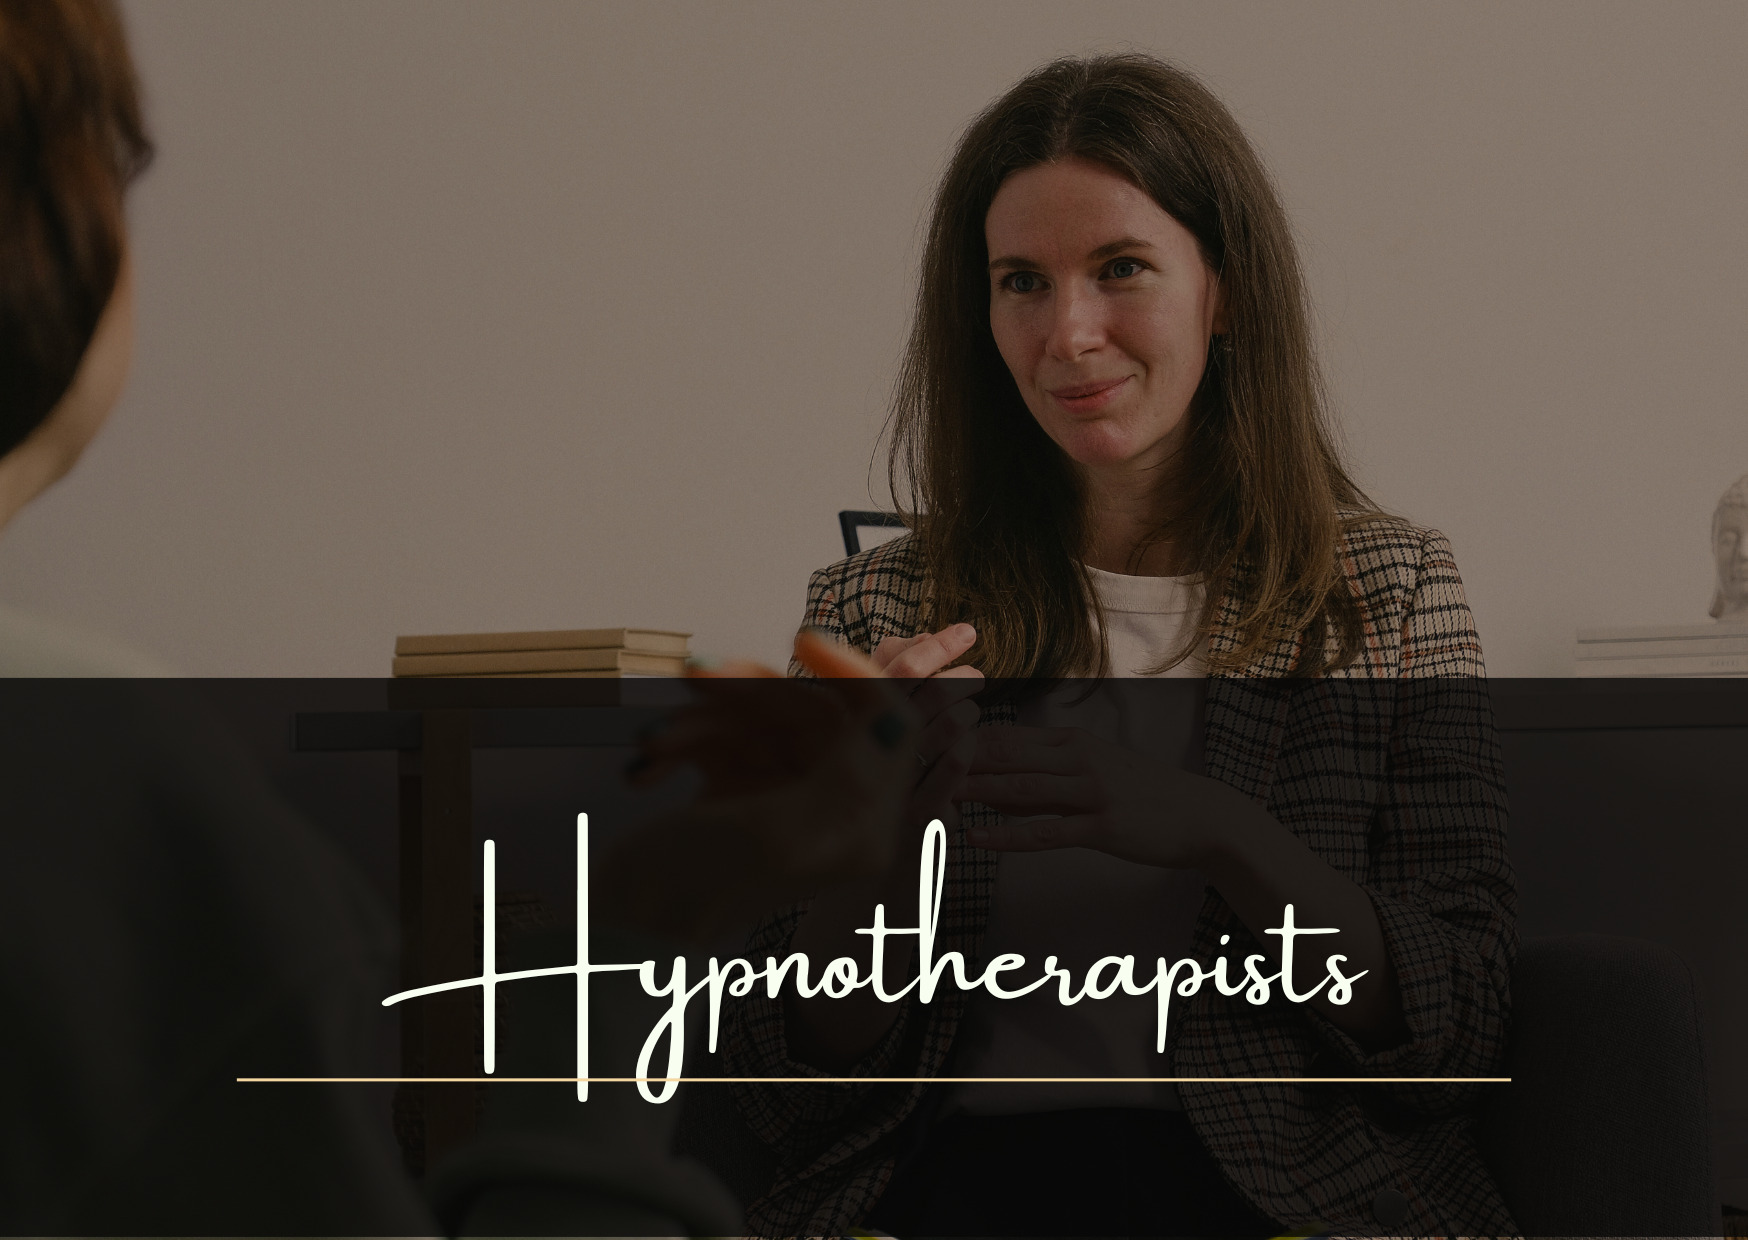 Hypnotherapist working